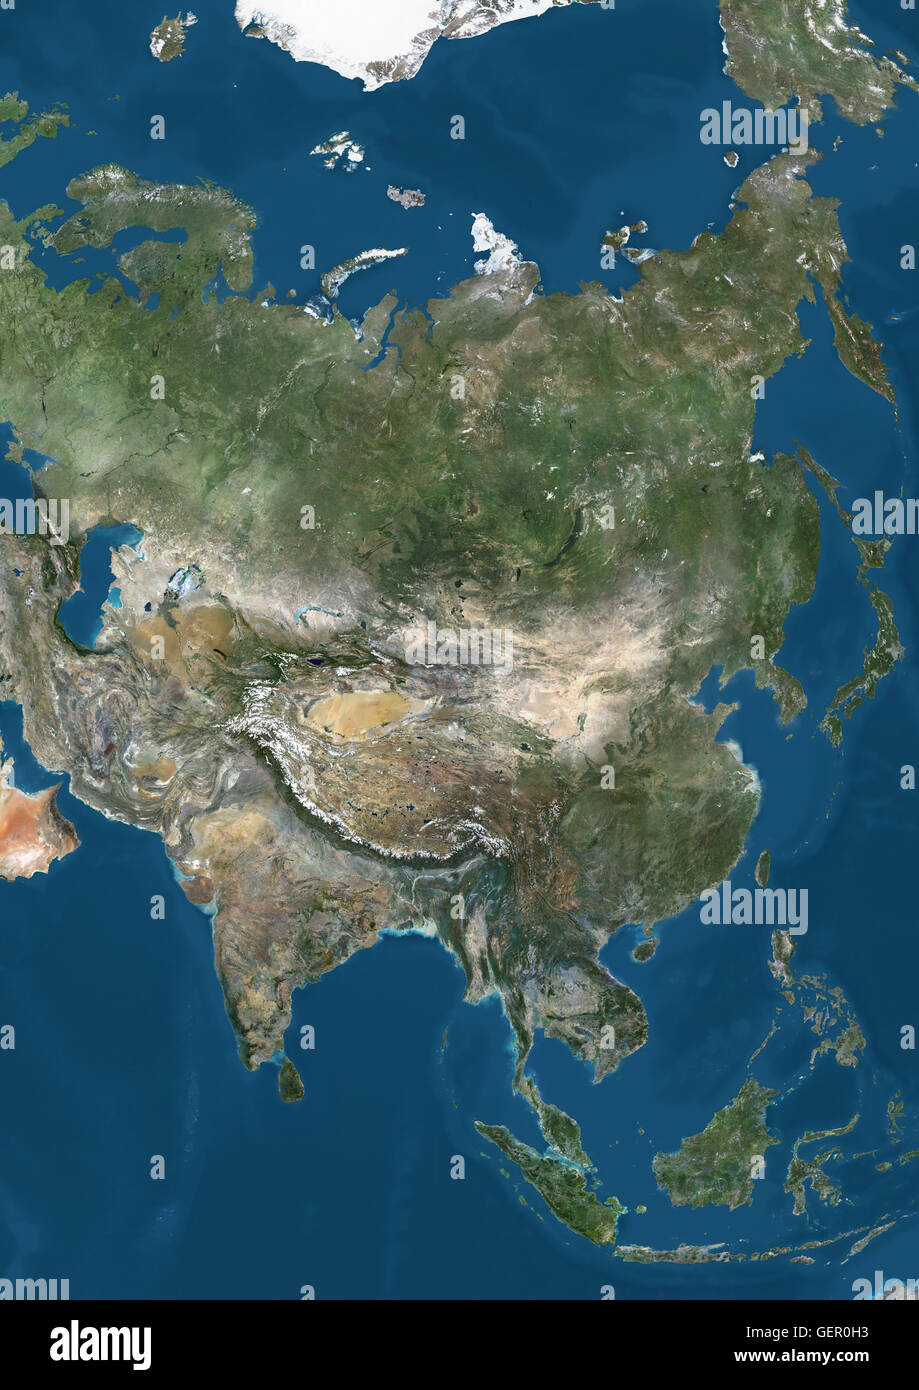 Vista satélite de Asia. Esta imagen fue compilado a partir de datos adquiridos por los satélites LANDSAT 7 y 8. Foto de stock